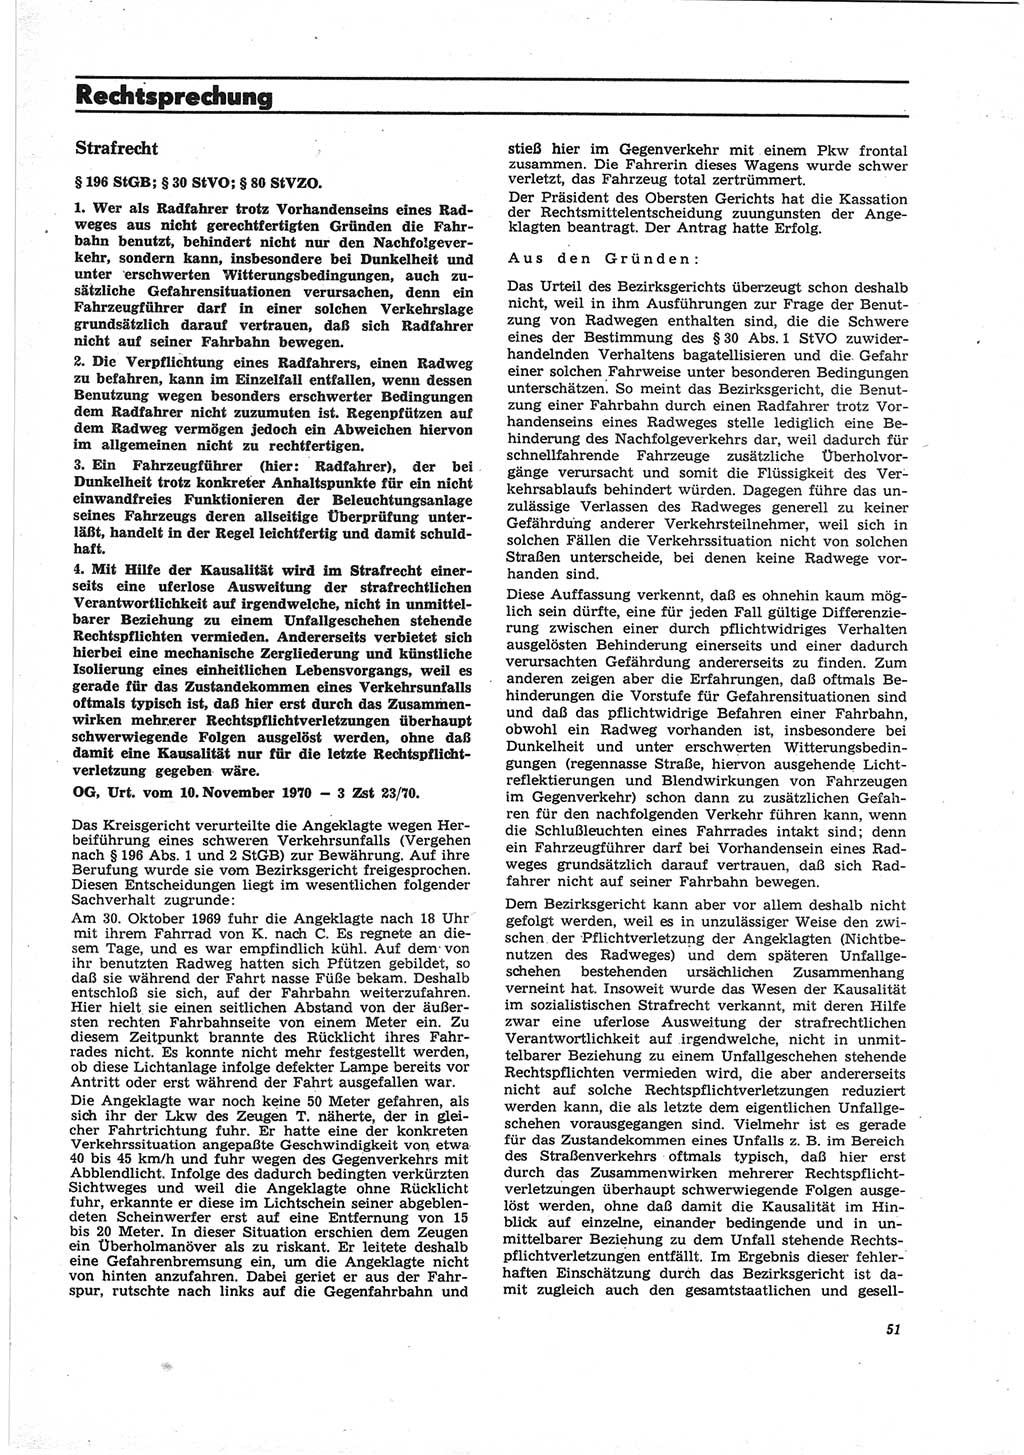 Neue Justiz (NJ), Zeitschrift für Recht und Rechtswissenschaft [Deutsche Demokratische Republik (DDR)], 25. Jahrgang 1971, Seite 51 (NJ DDR 1971, S. 51)